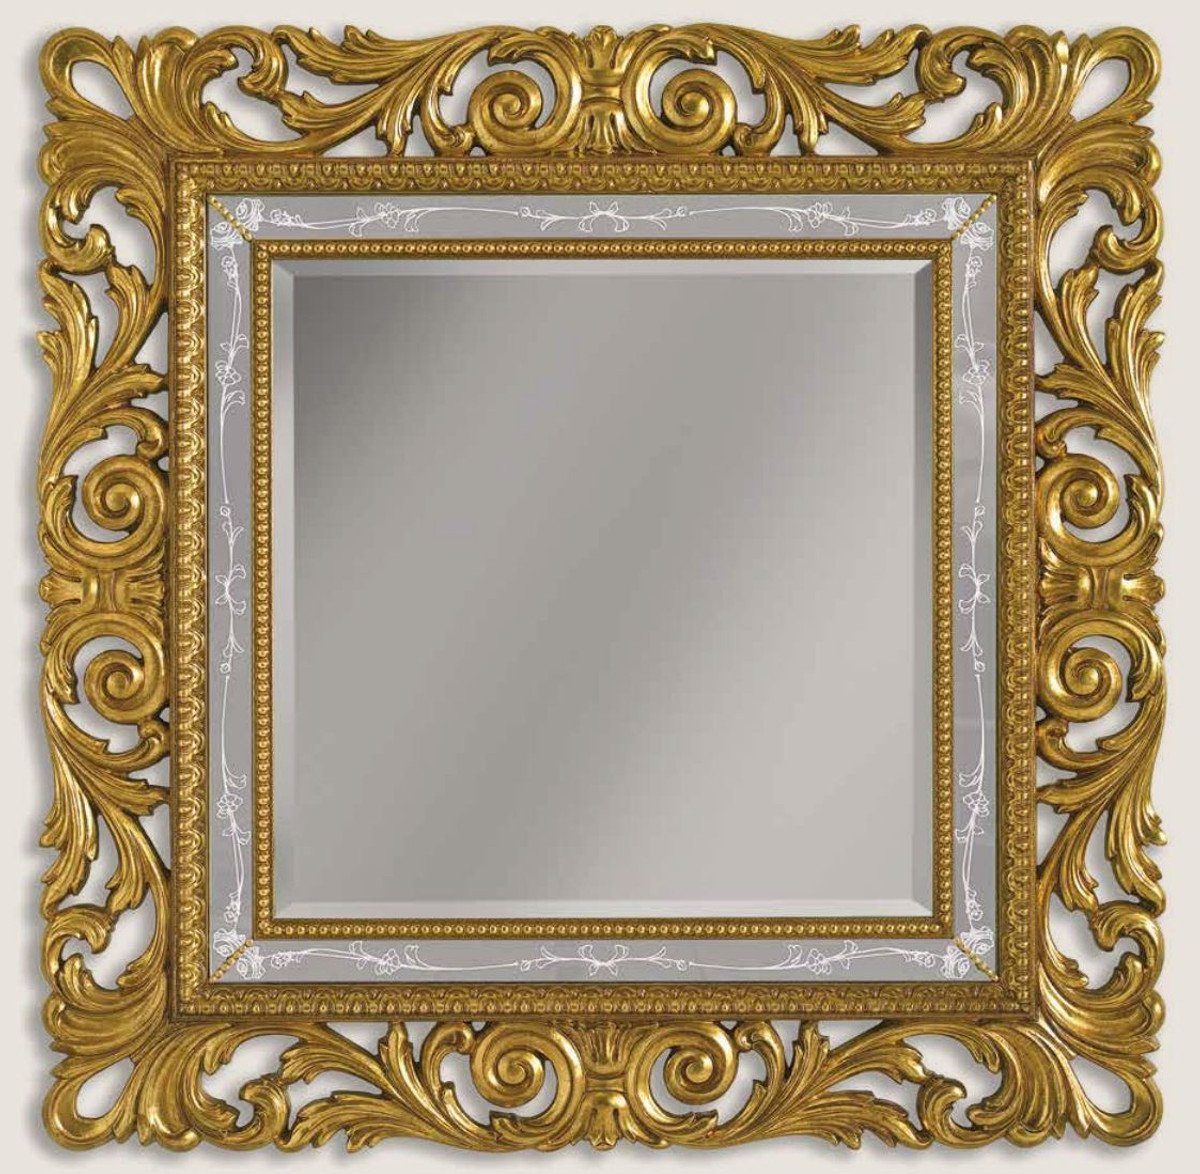 Casa Padrino Barockspiegel Luxus Barock Spiegel Gold / Grau / Weiß - Prunkvoller Wandspiegel im Barockstil - Barock Möbel - Luxus Qualität - Made in Italy